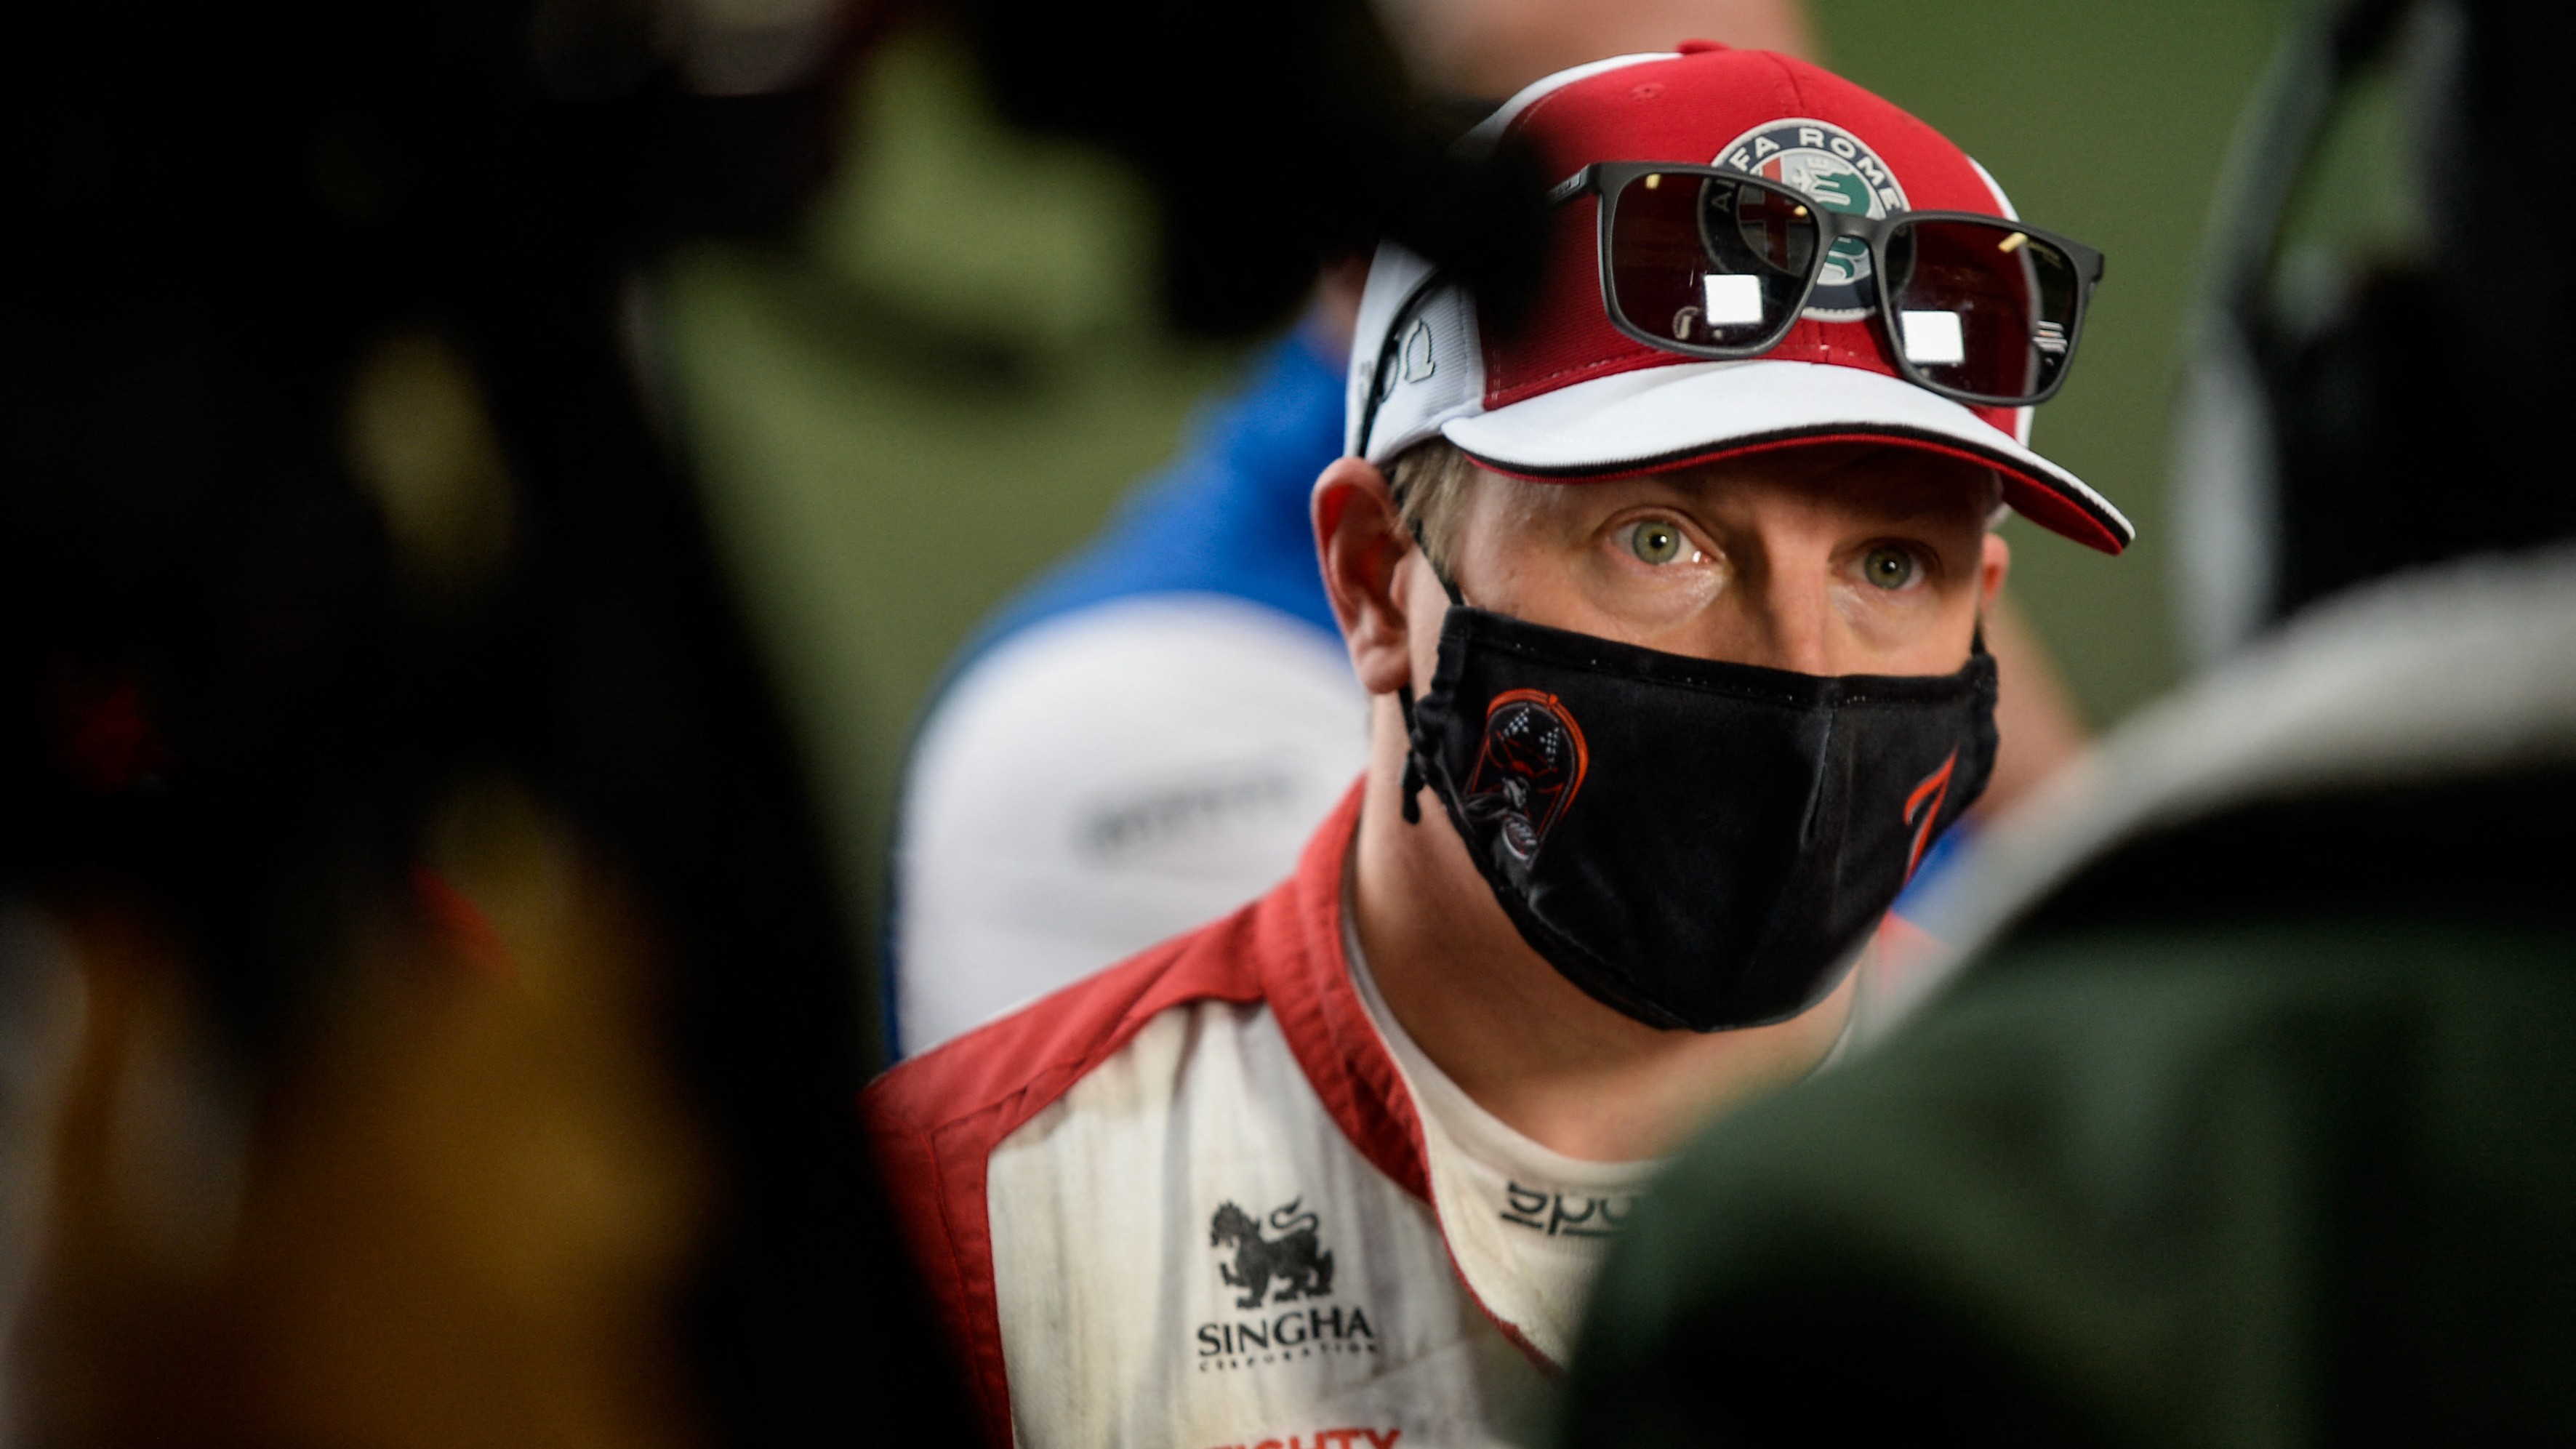 Räikkönent a világbajnoki versenyről kérdezték, a válasza mindent visz